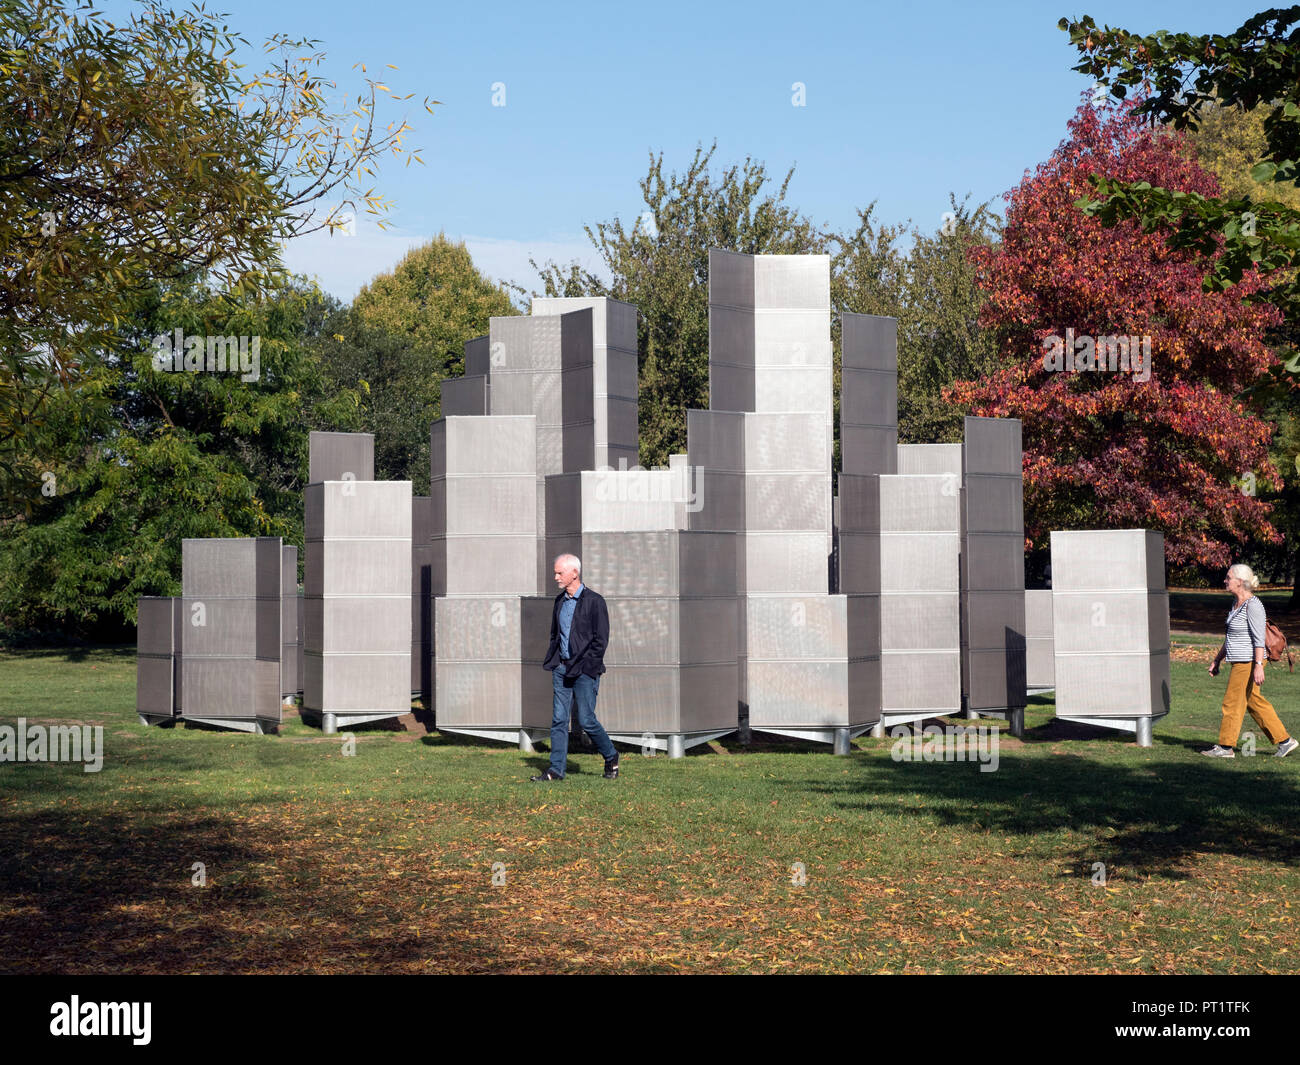 London, Großbritannien. 5. Okt 2018. Skulptur Anzeige im Regents Park Teil der "Frieze Art Fair, London UK 2018. 05/10/2018 Credit: Martyn Goddard/Alamy leben Nachrichten Stockfoto